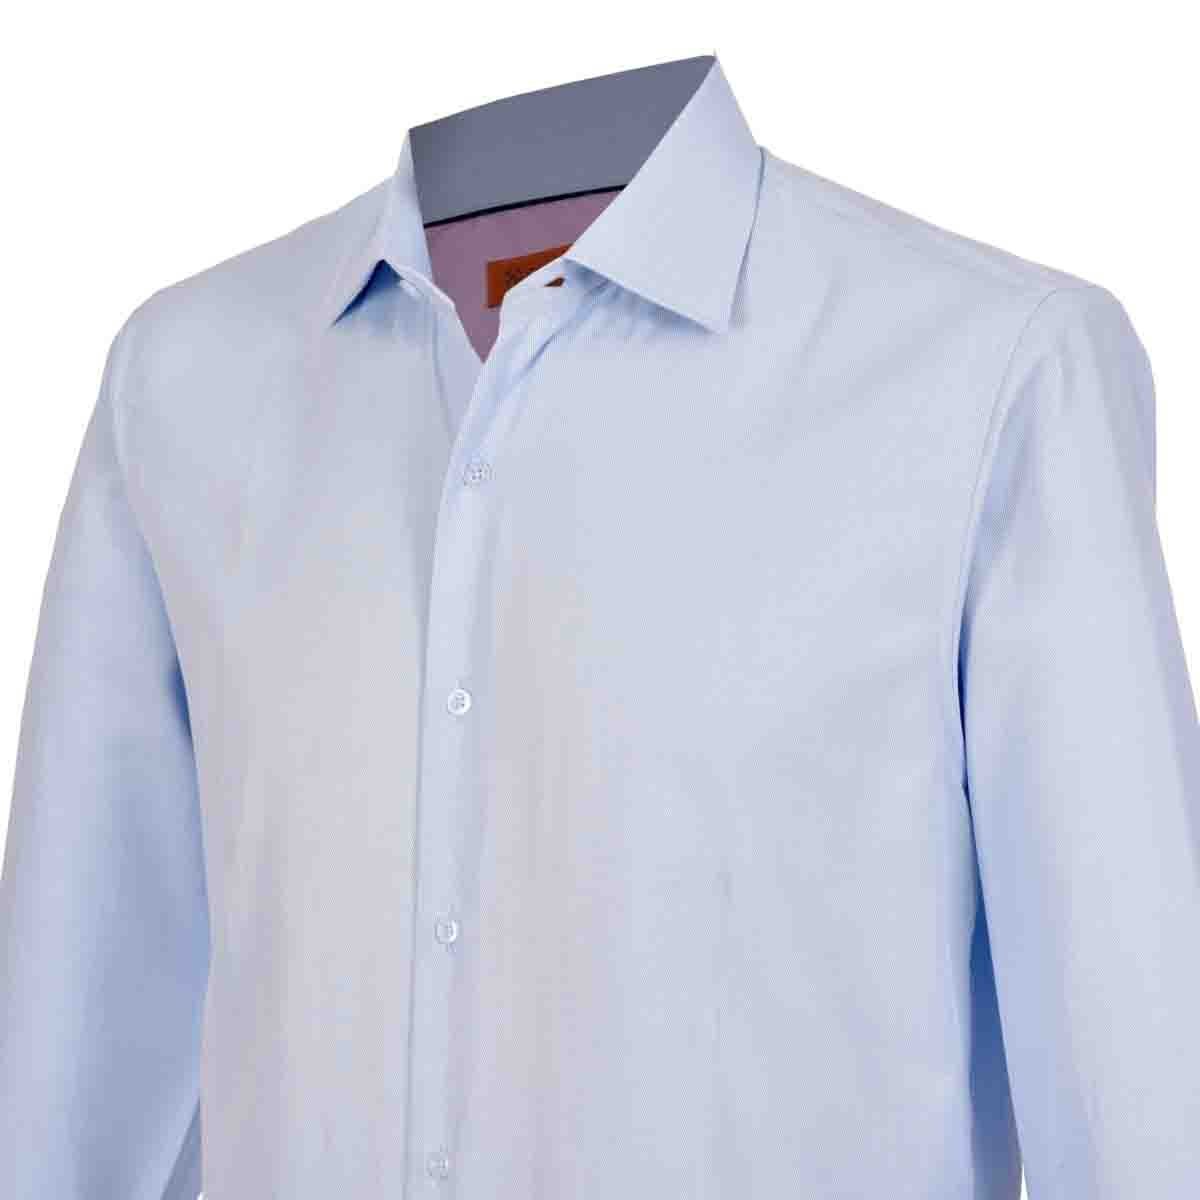 Download Camisa de vestir slim fit color azul claro carlo corinto - Sears